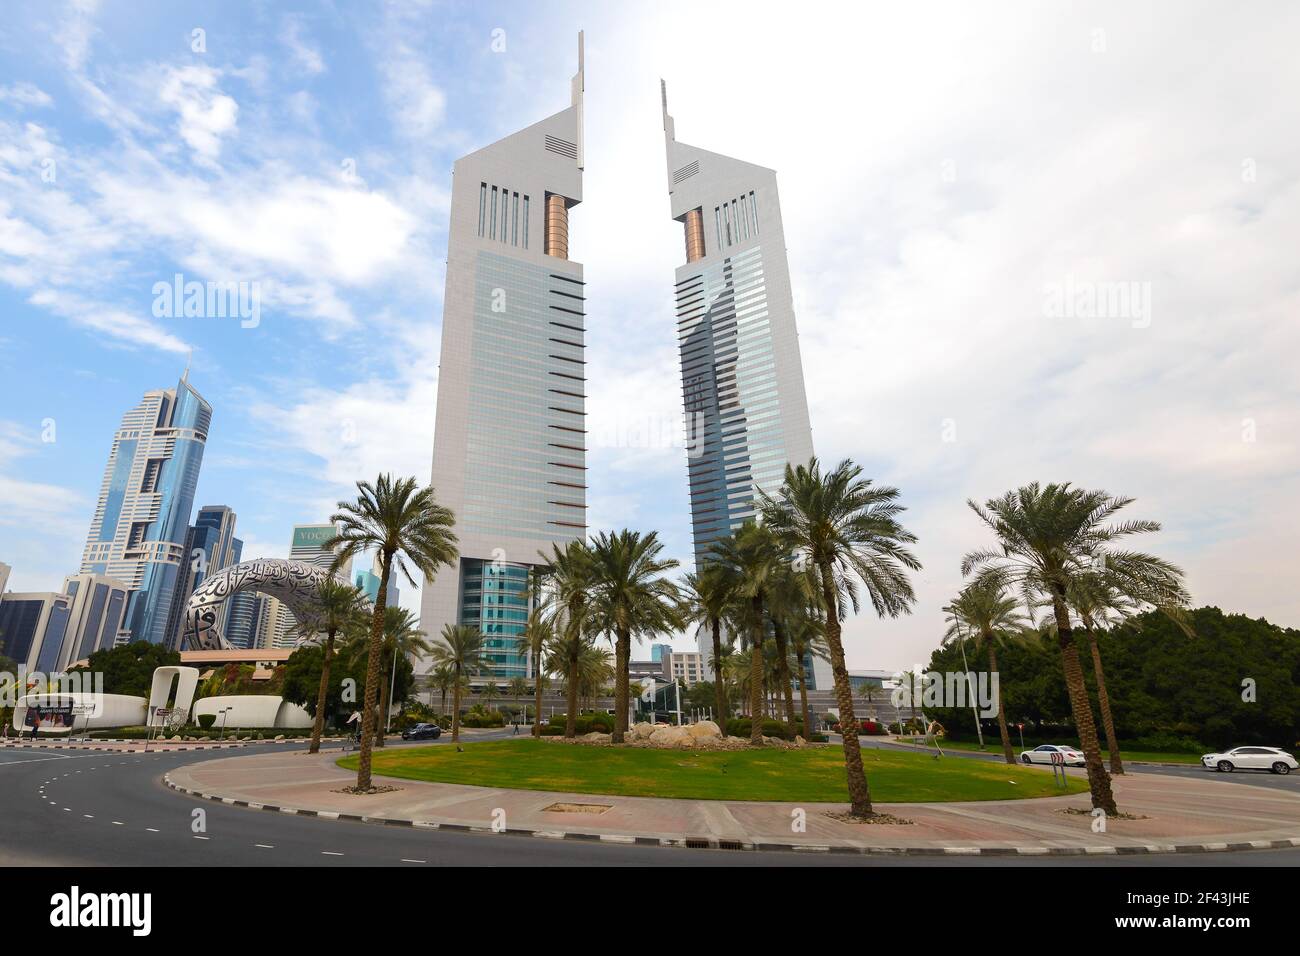 El edificio Emirates Towers, que consta de la torre Emirates Office Tower y el Jumeirah Emirates Towers Hotel en el distrito financiero de Dubai. Foto de stock